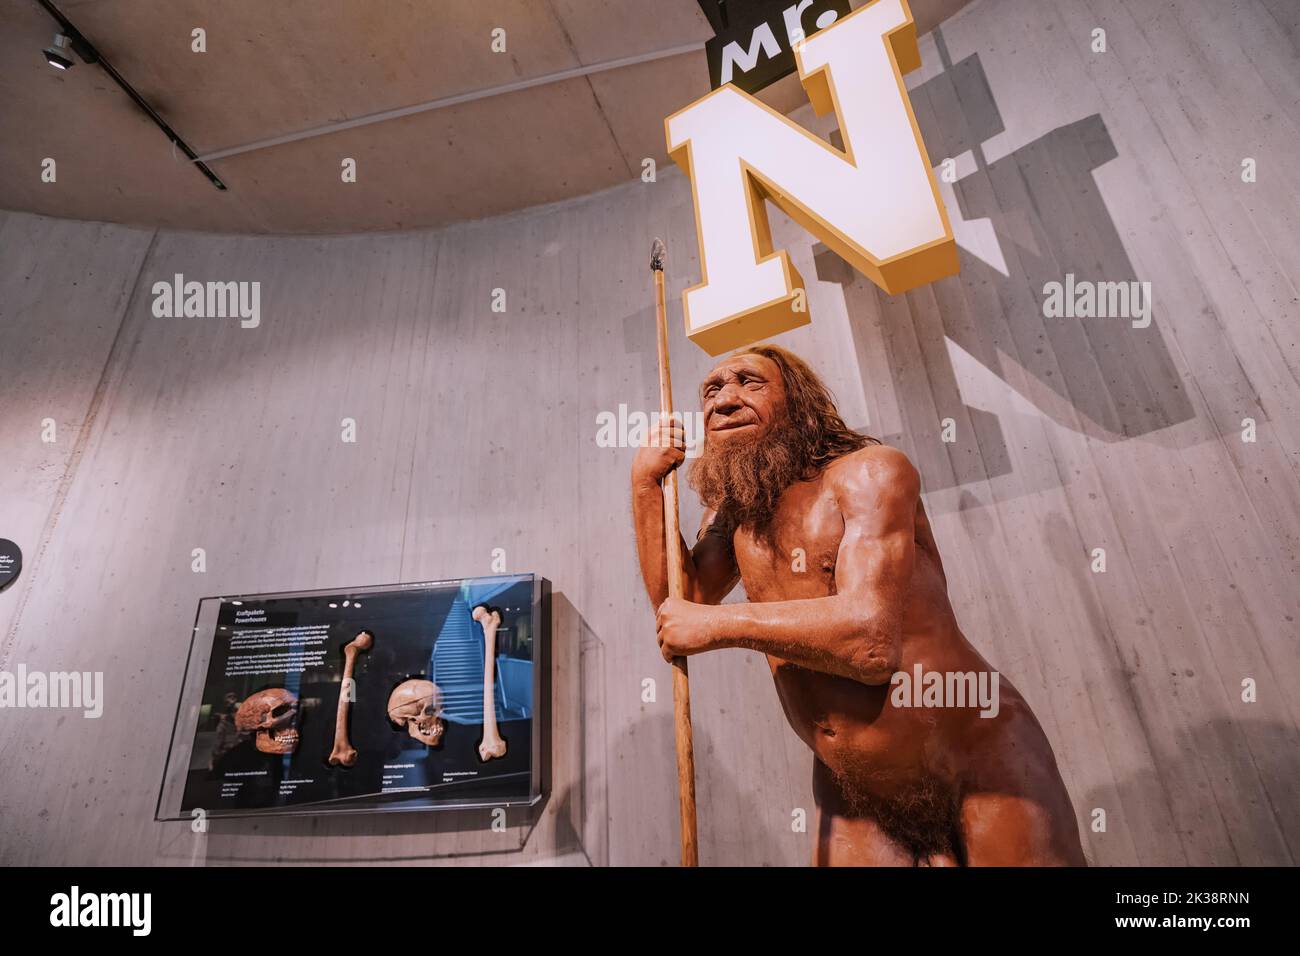 22 luglio 2022, museo di Neanderthal, Germania: Figura in cera dettagliata del caveman preistorico di Neanderthal con lancia nel museo. Antropologia dei Sapiens umani Foto Stock